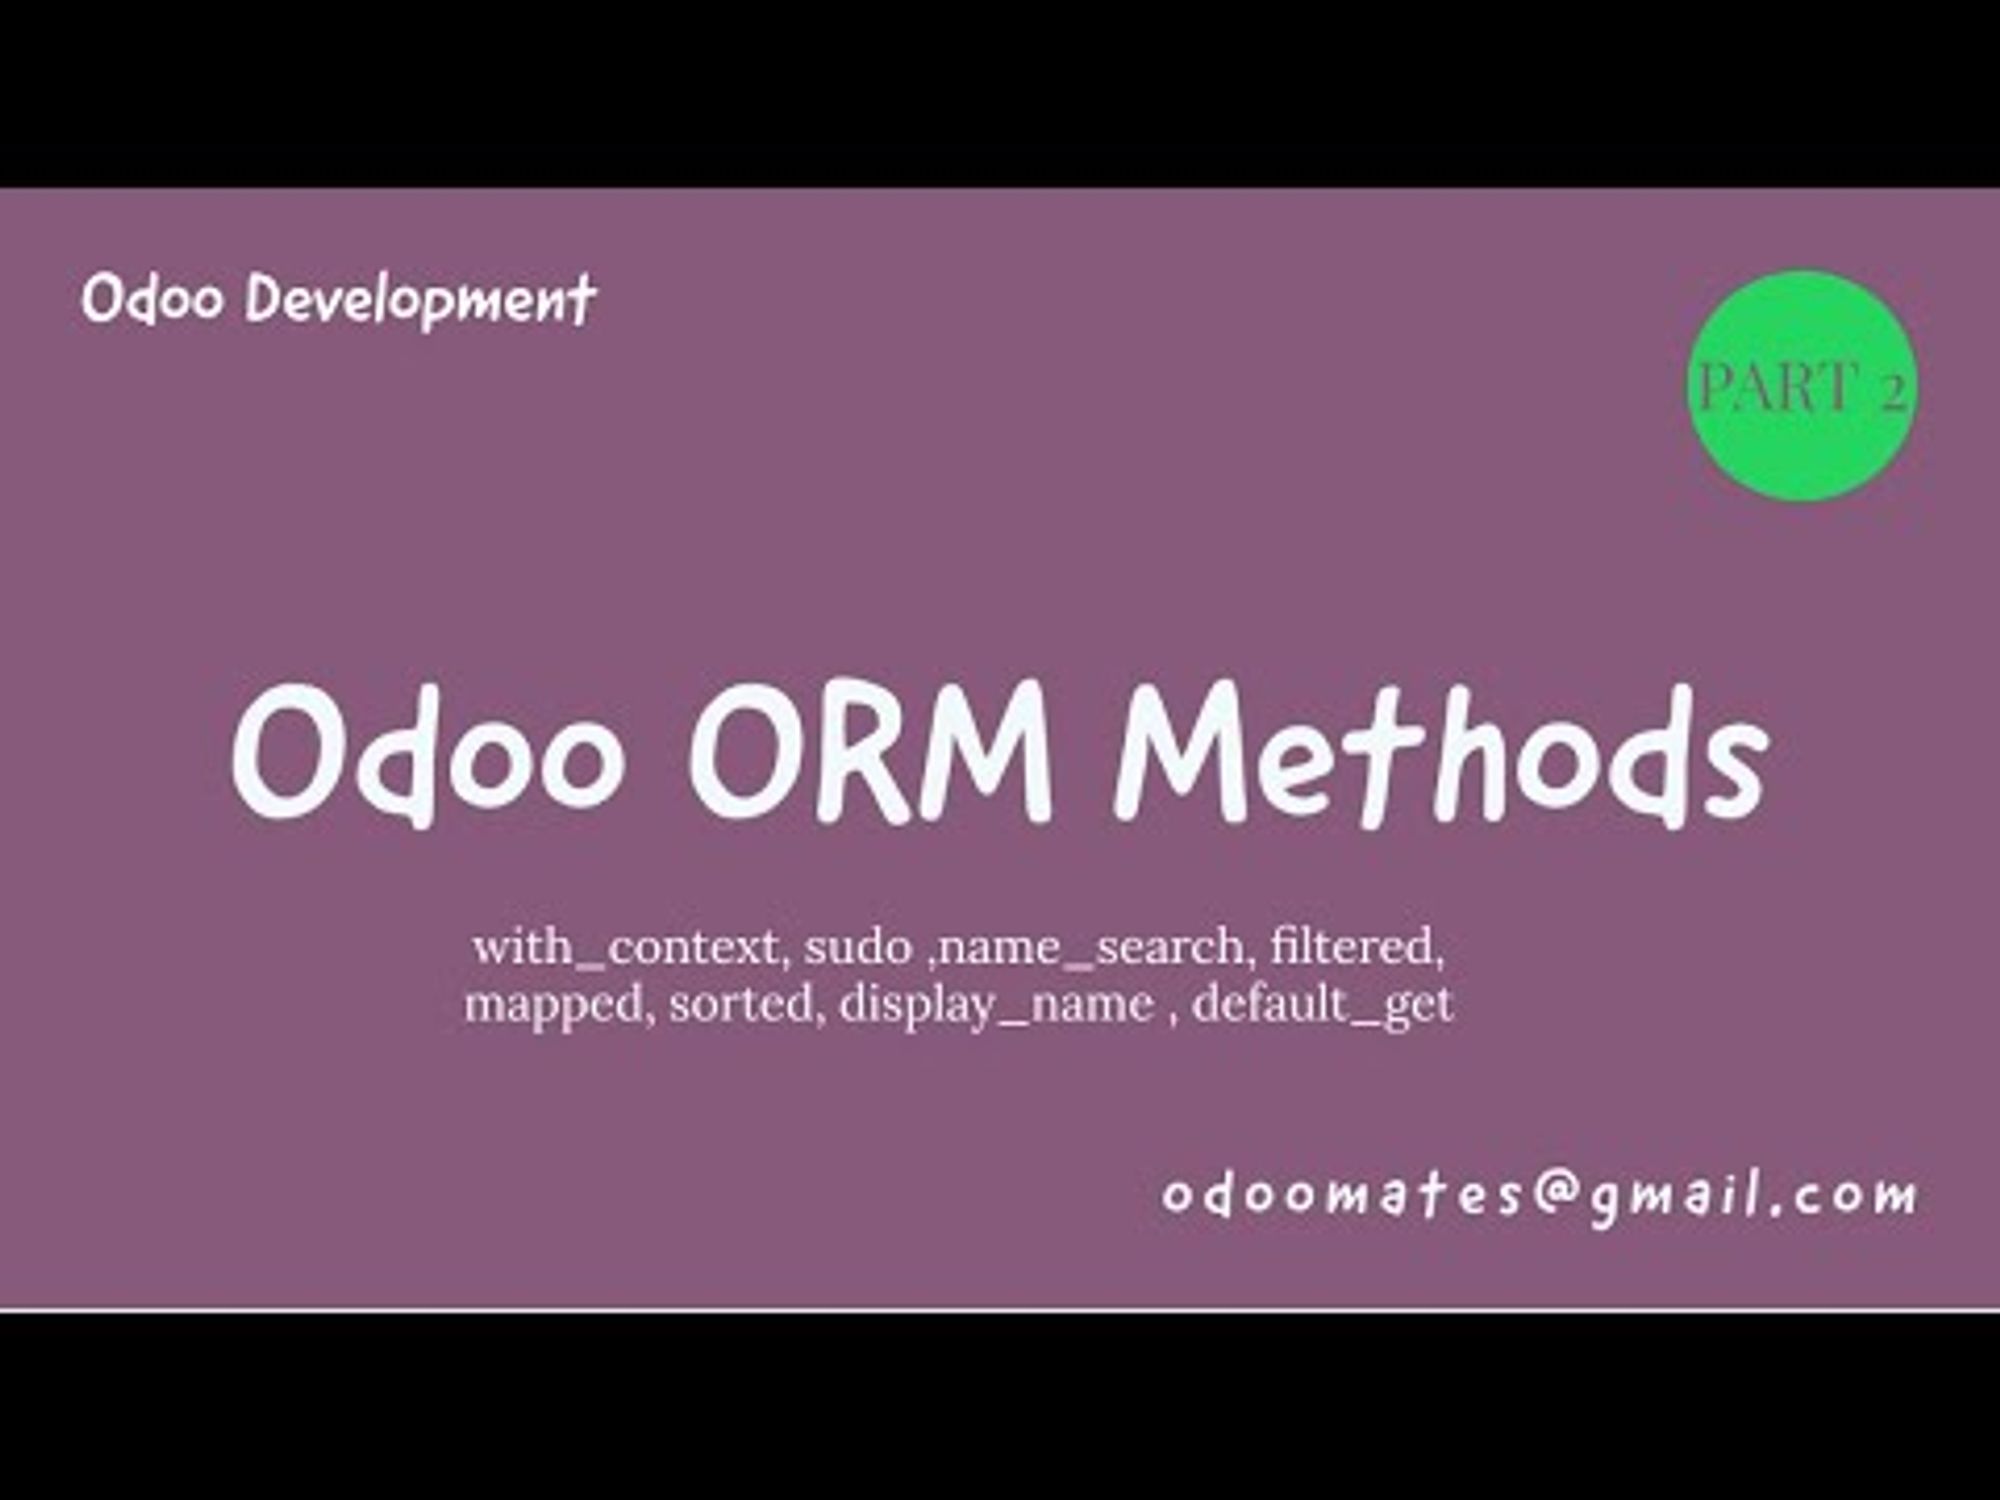 Odoo ORM Methods - Part 2